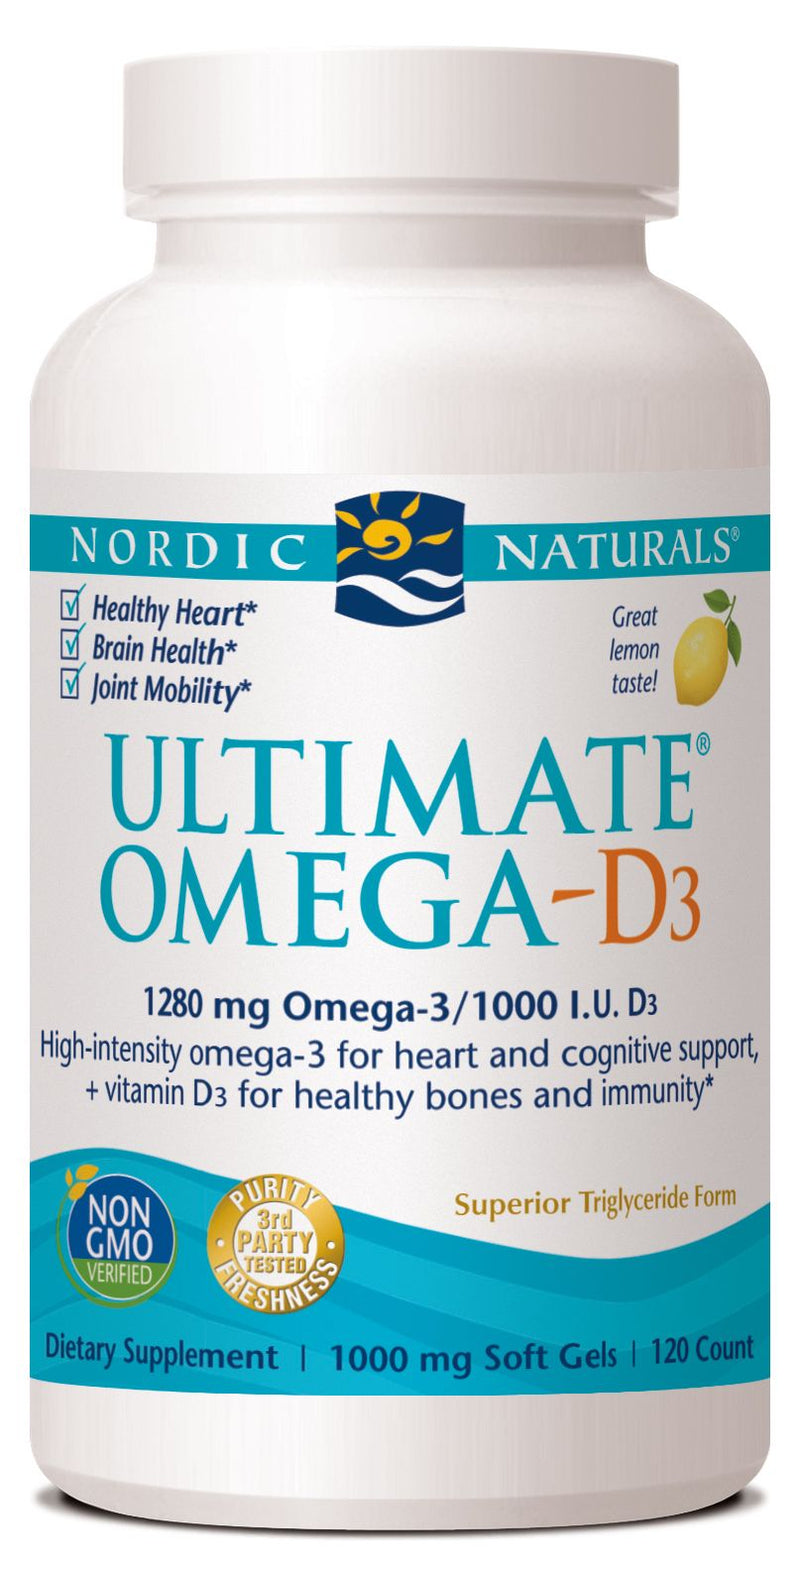 Nordic Naturals Ultimate Omega-D3 120 softgels 